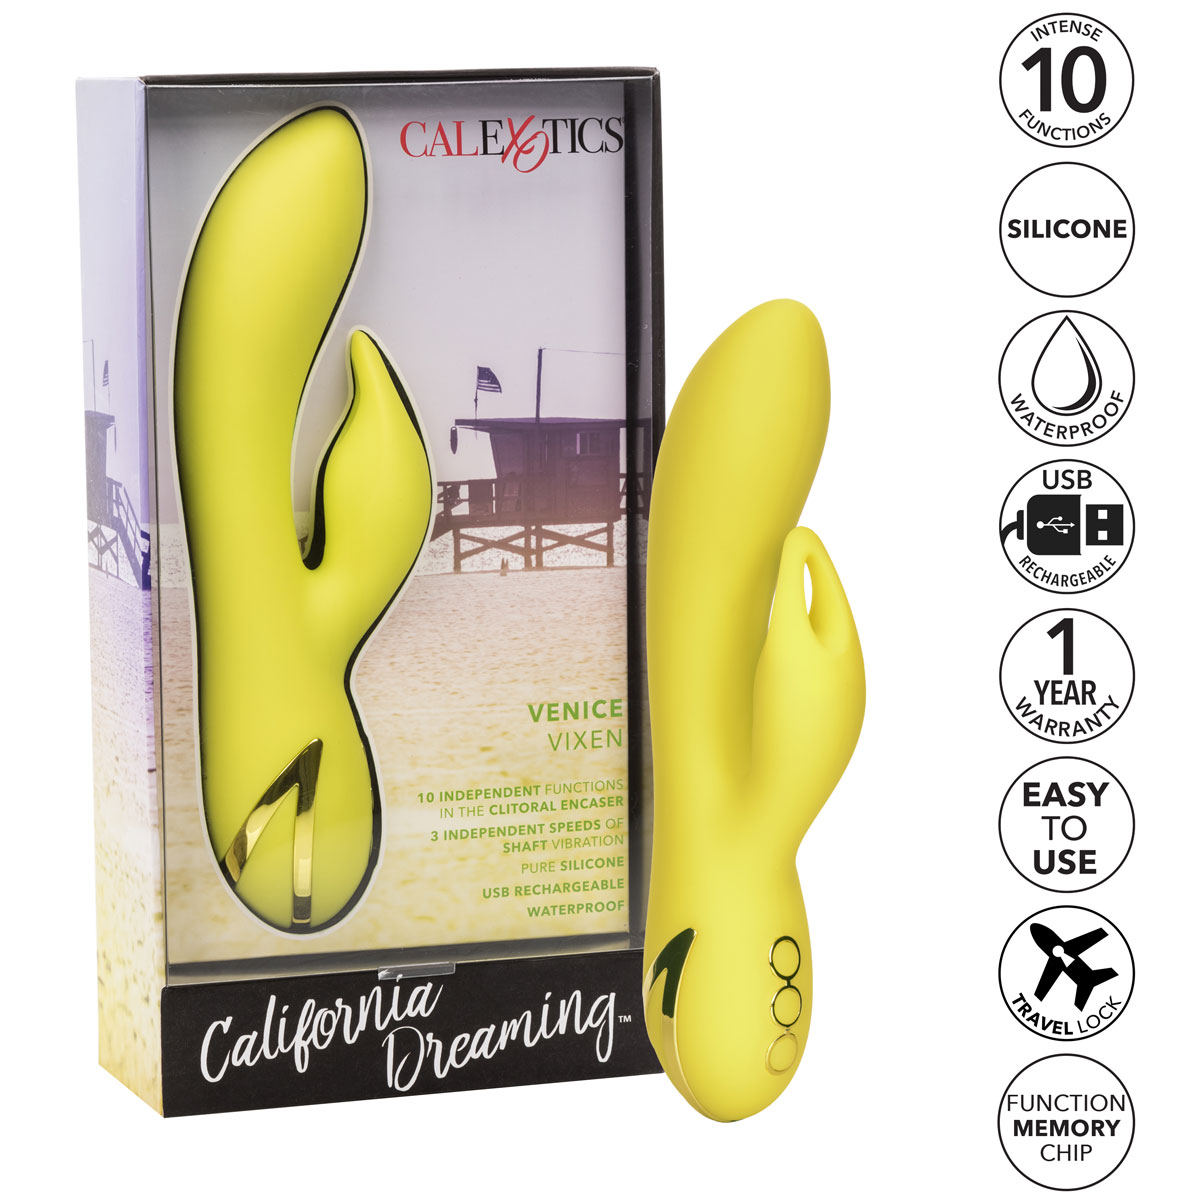 California Dreaming Venice Vixen Rabbit Style Silicone Vibrator - Features